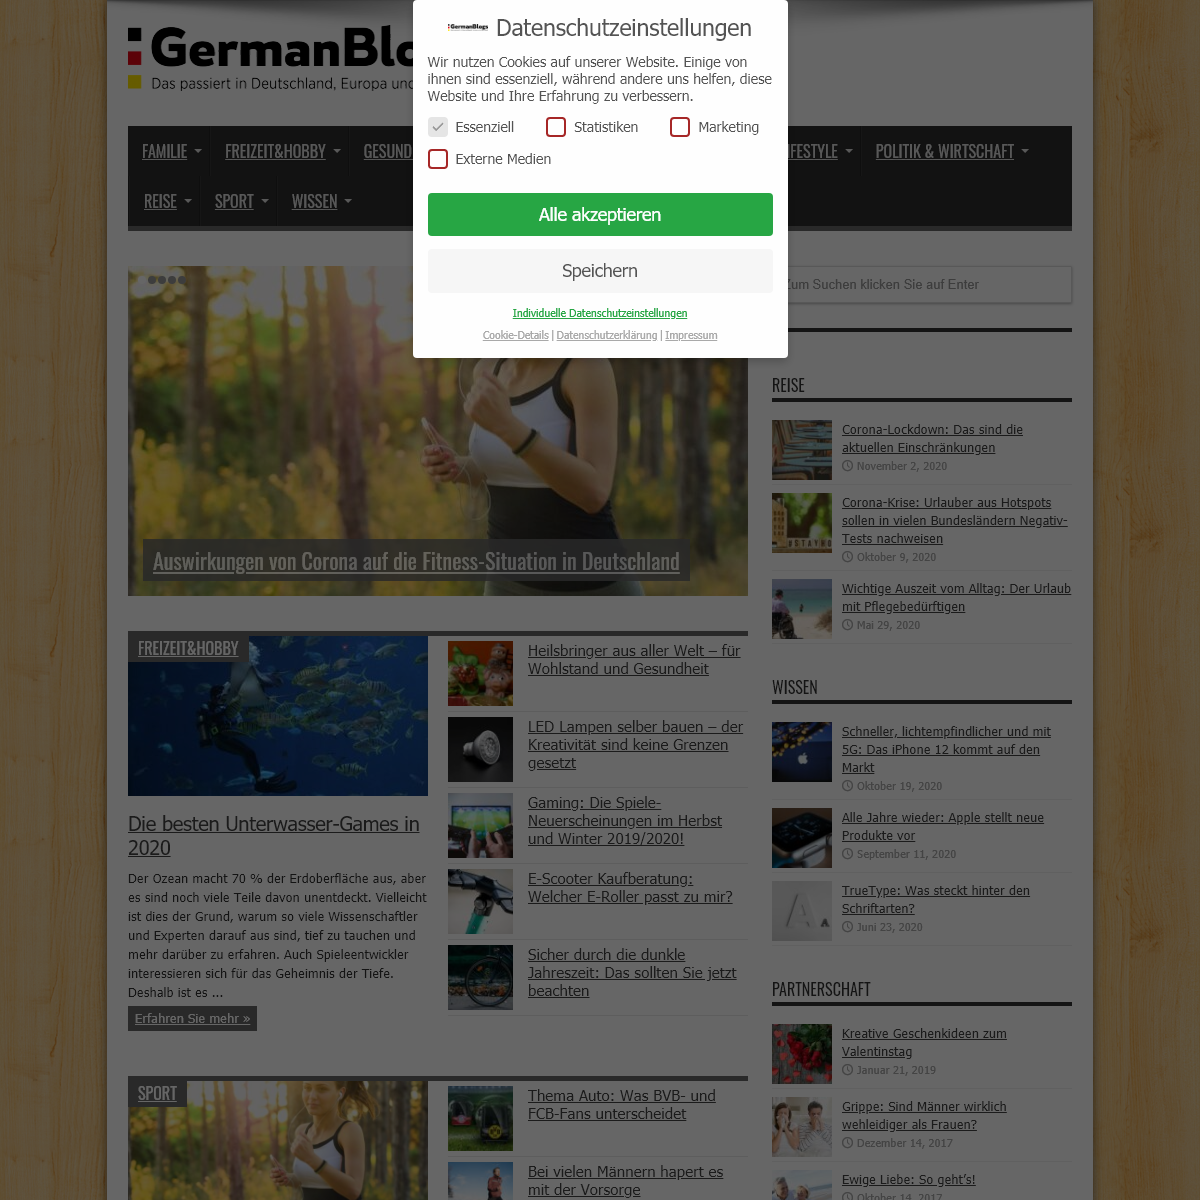 A complete backup of germanblogs.de